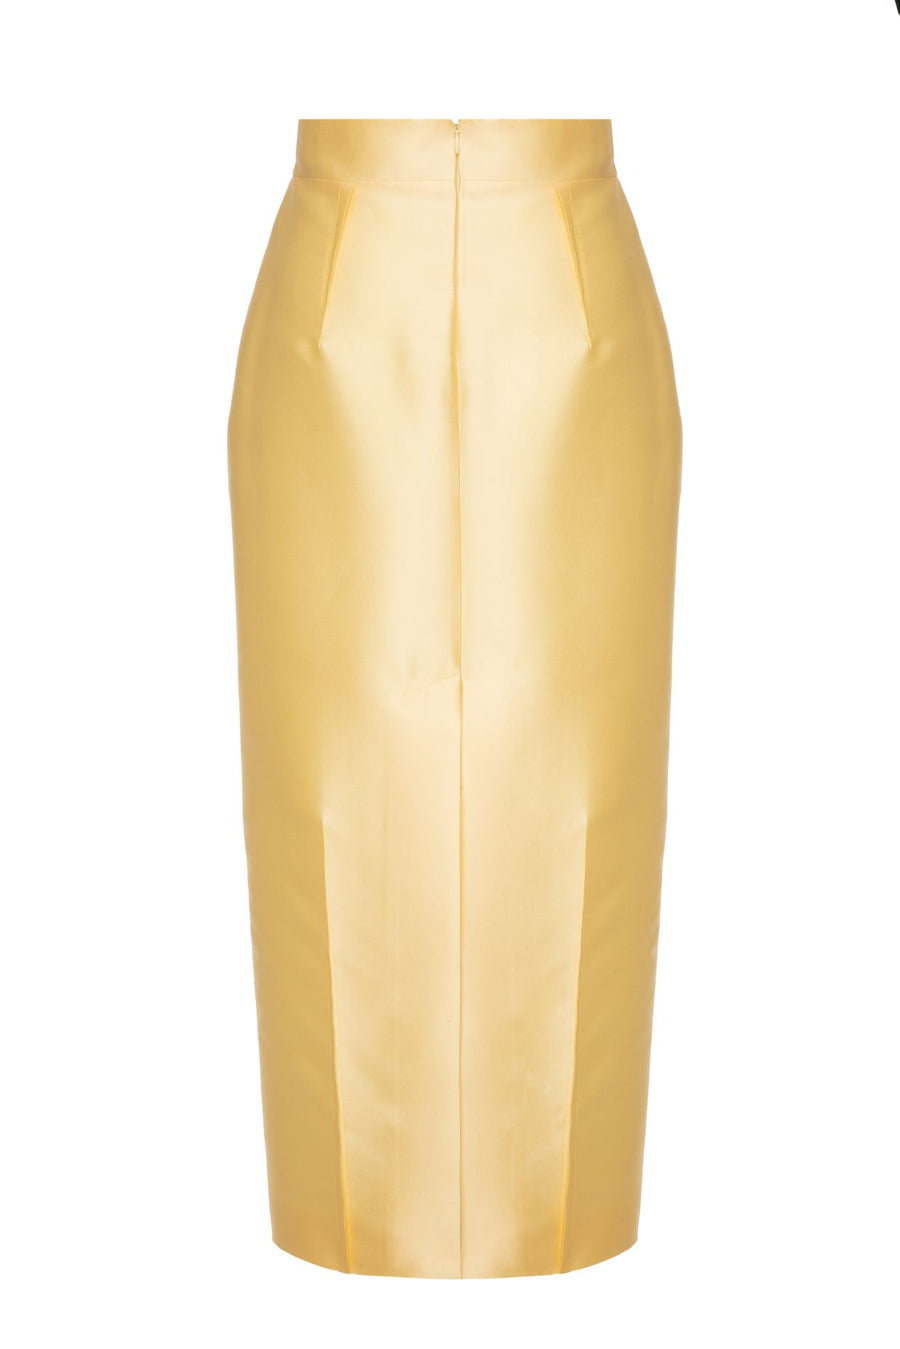 Toina Yellow Skirt